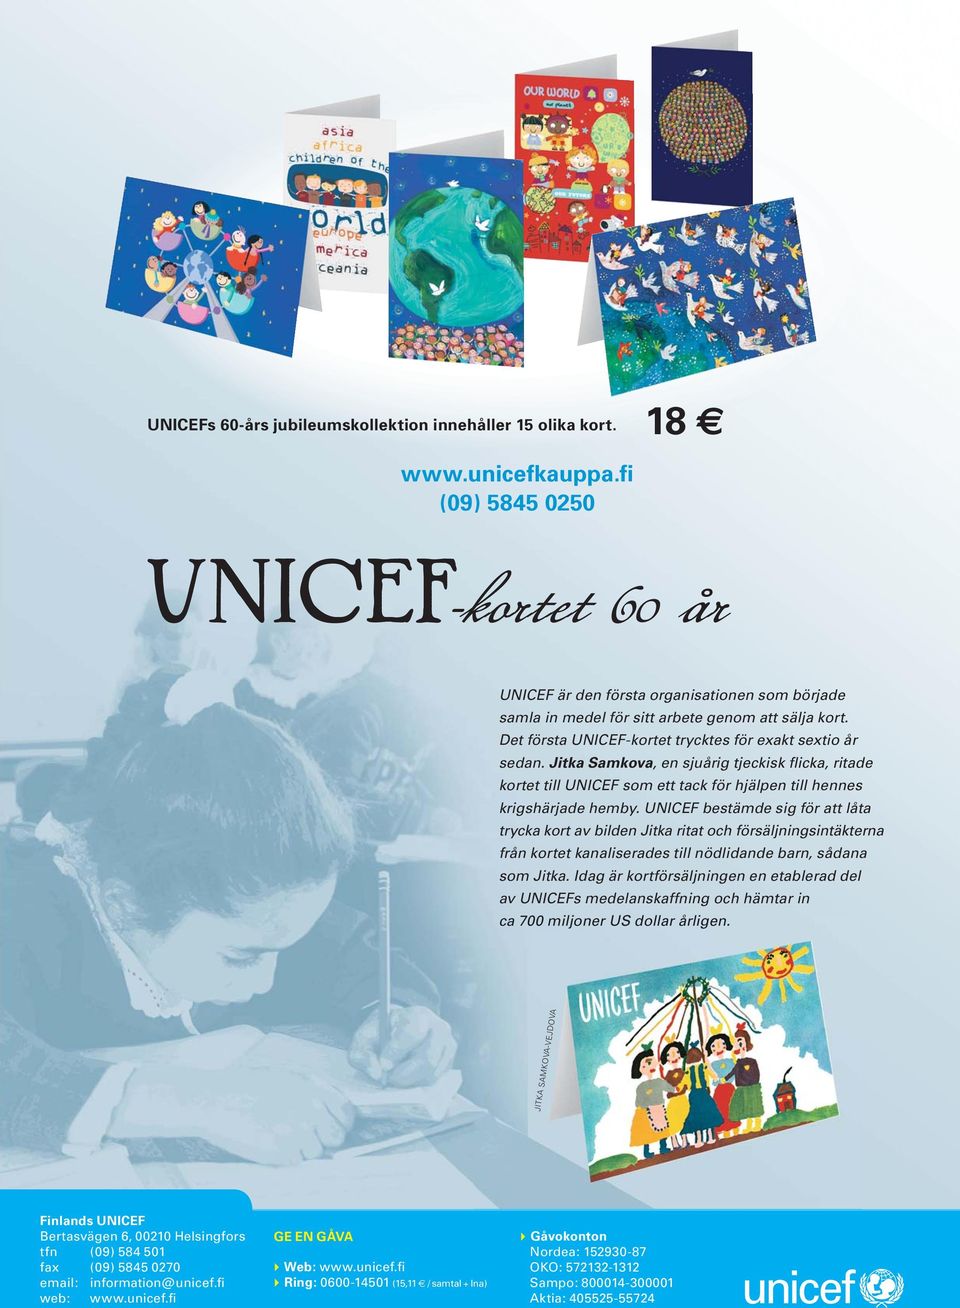 Jitka Samkova, en sjuårig tjeckisk flicka, ritade kortet till UNICEF som ett tack för hjälpen till hennes krigshärjade hemby.